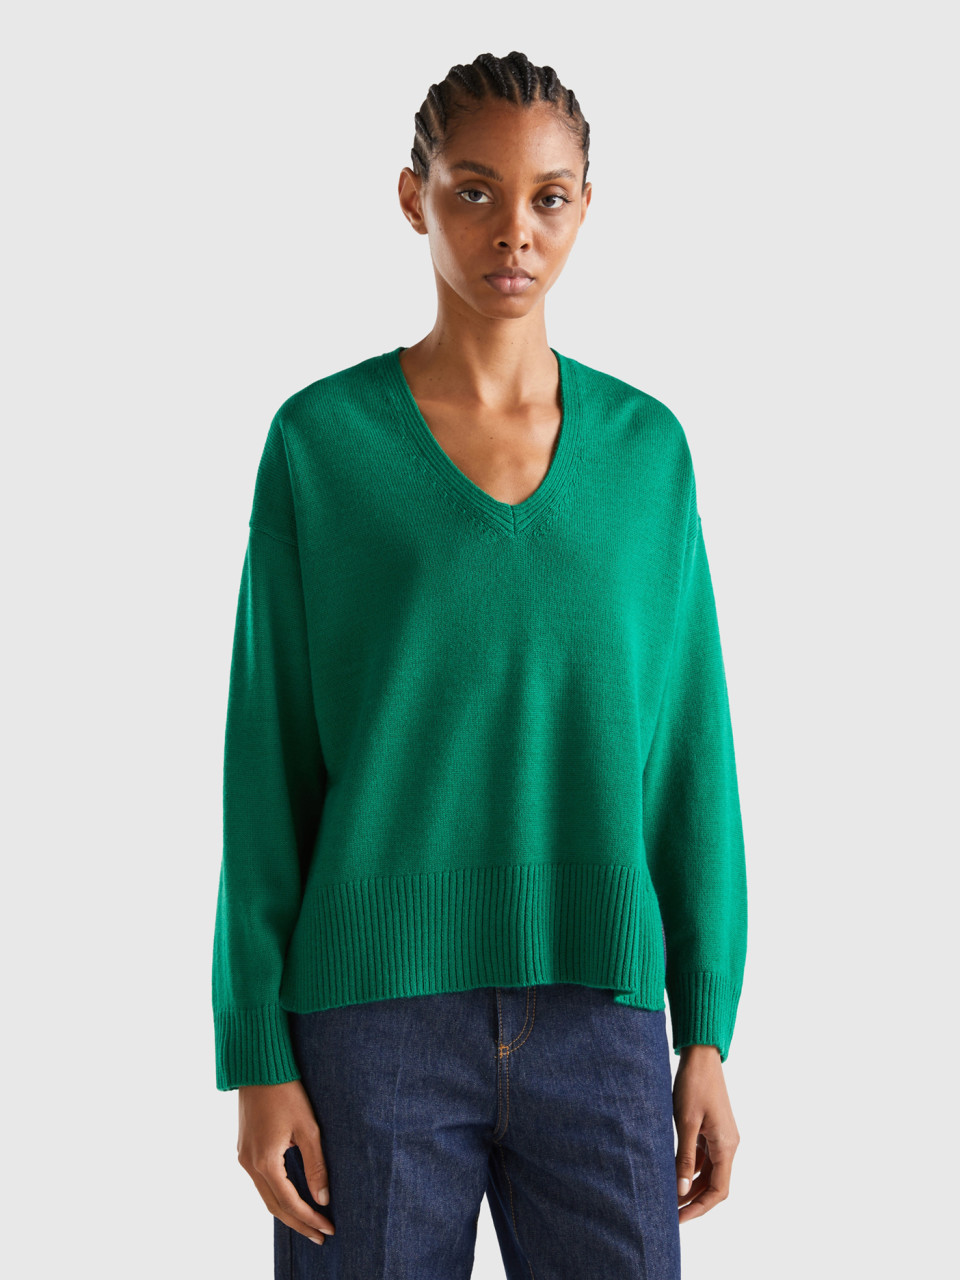 Benetton, Oversized Fit V-neck Sweater, Green, Women